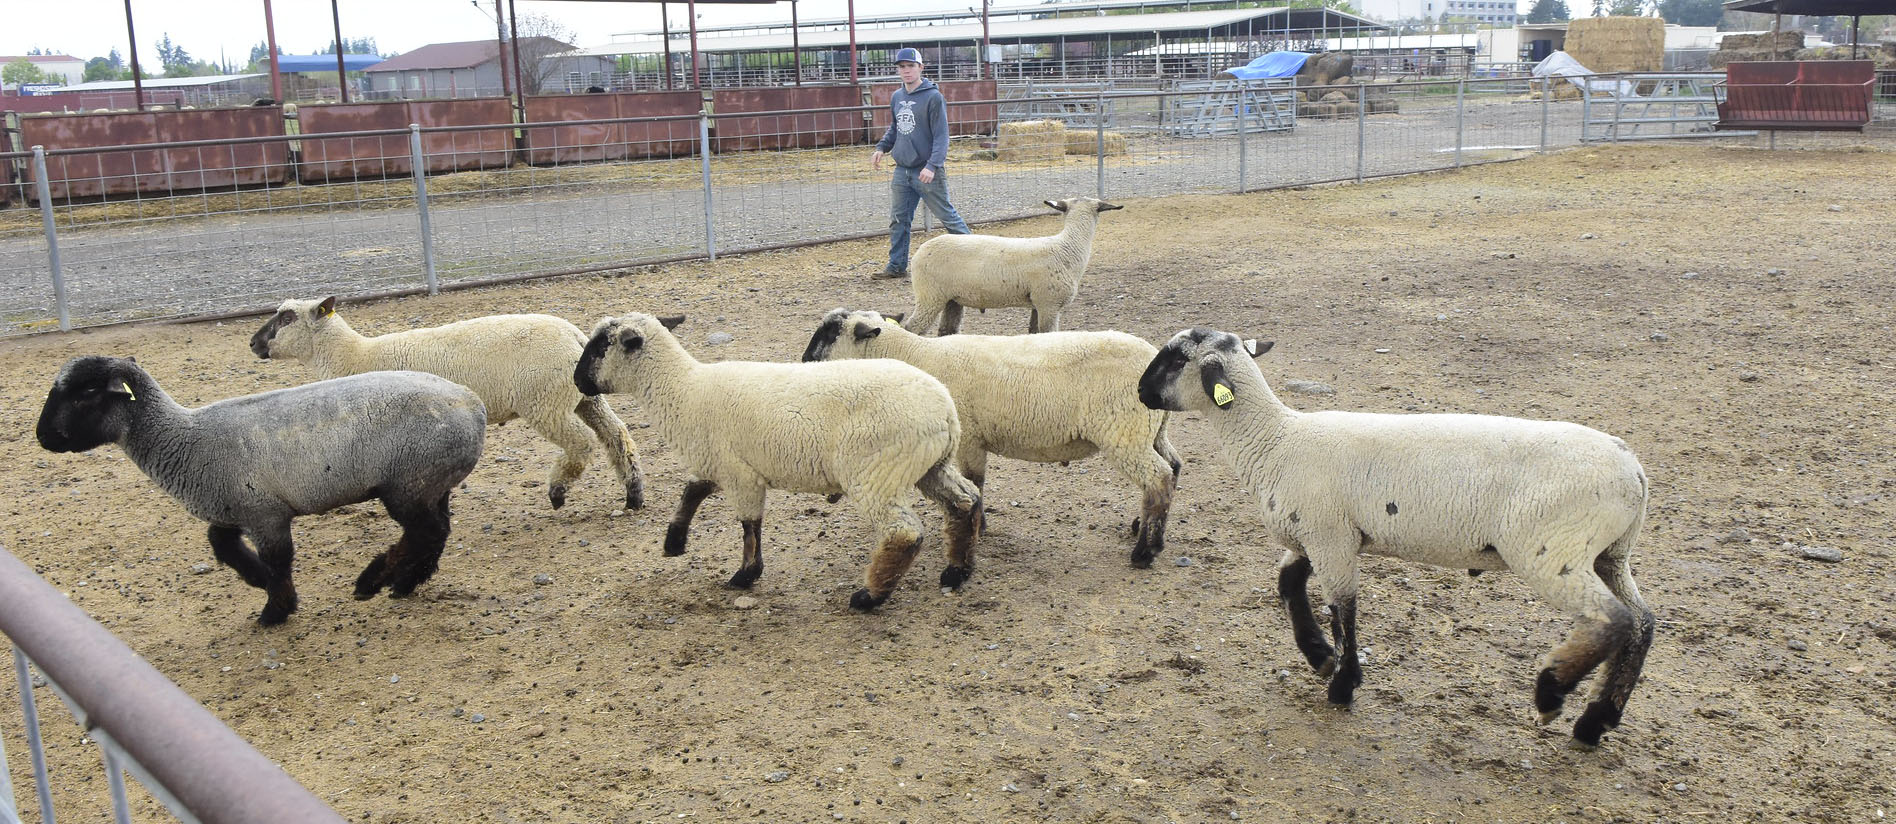 Sheep herding at the sheep unit